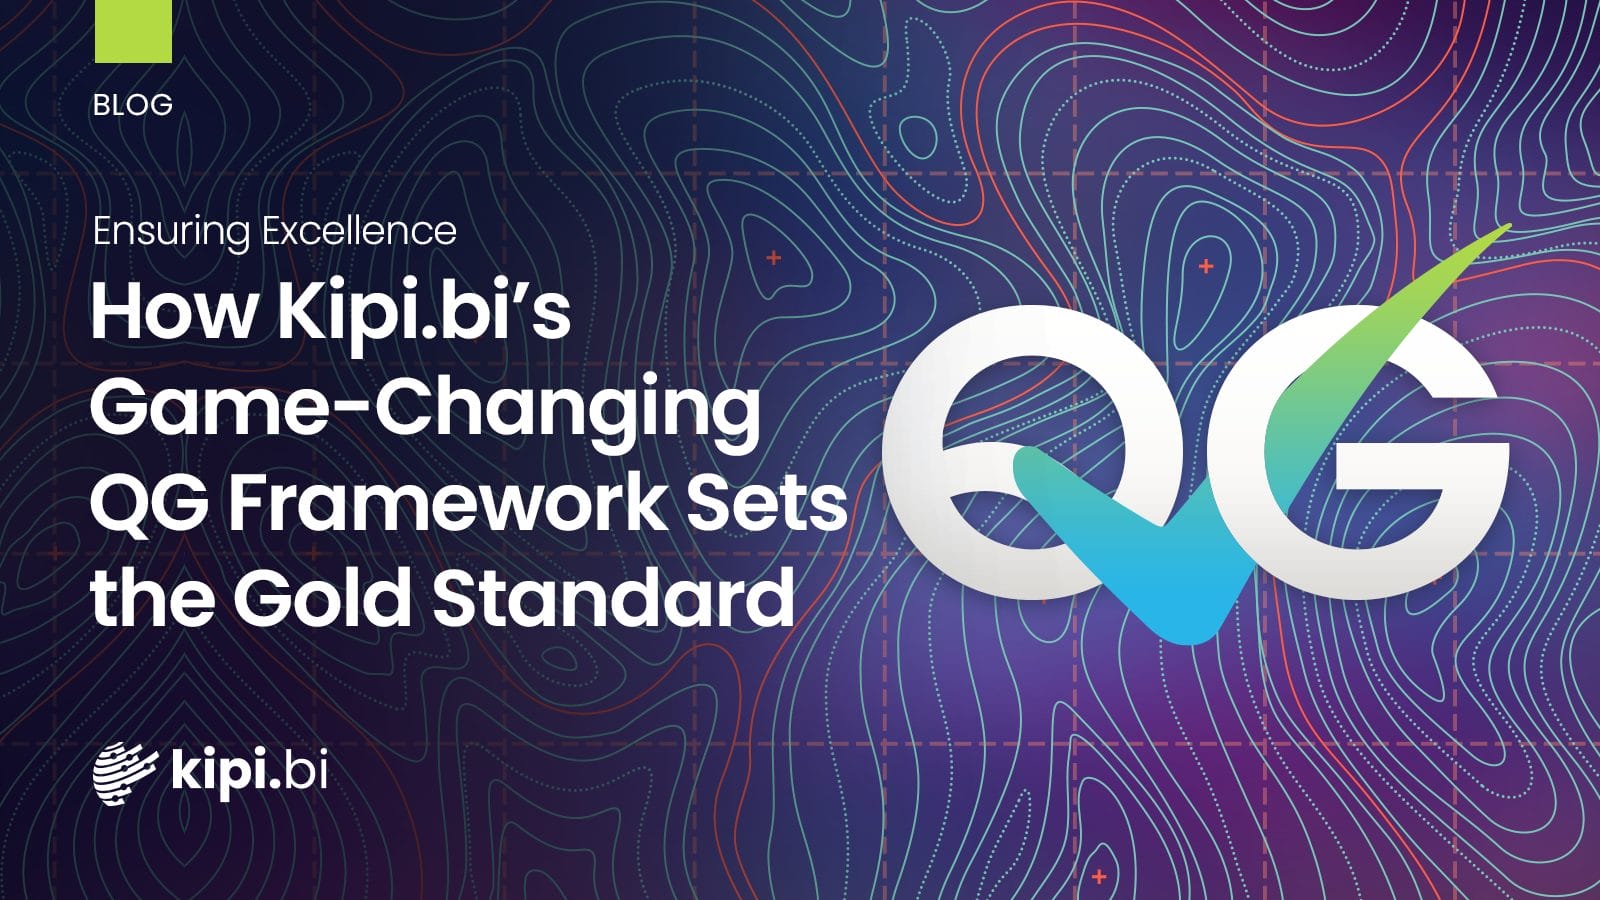 Ensuring Excellence: How Kipi.bi’s Game-Changing QG Framework Sets the Gold Standard